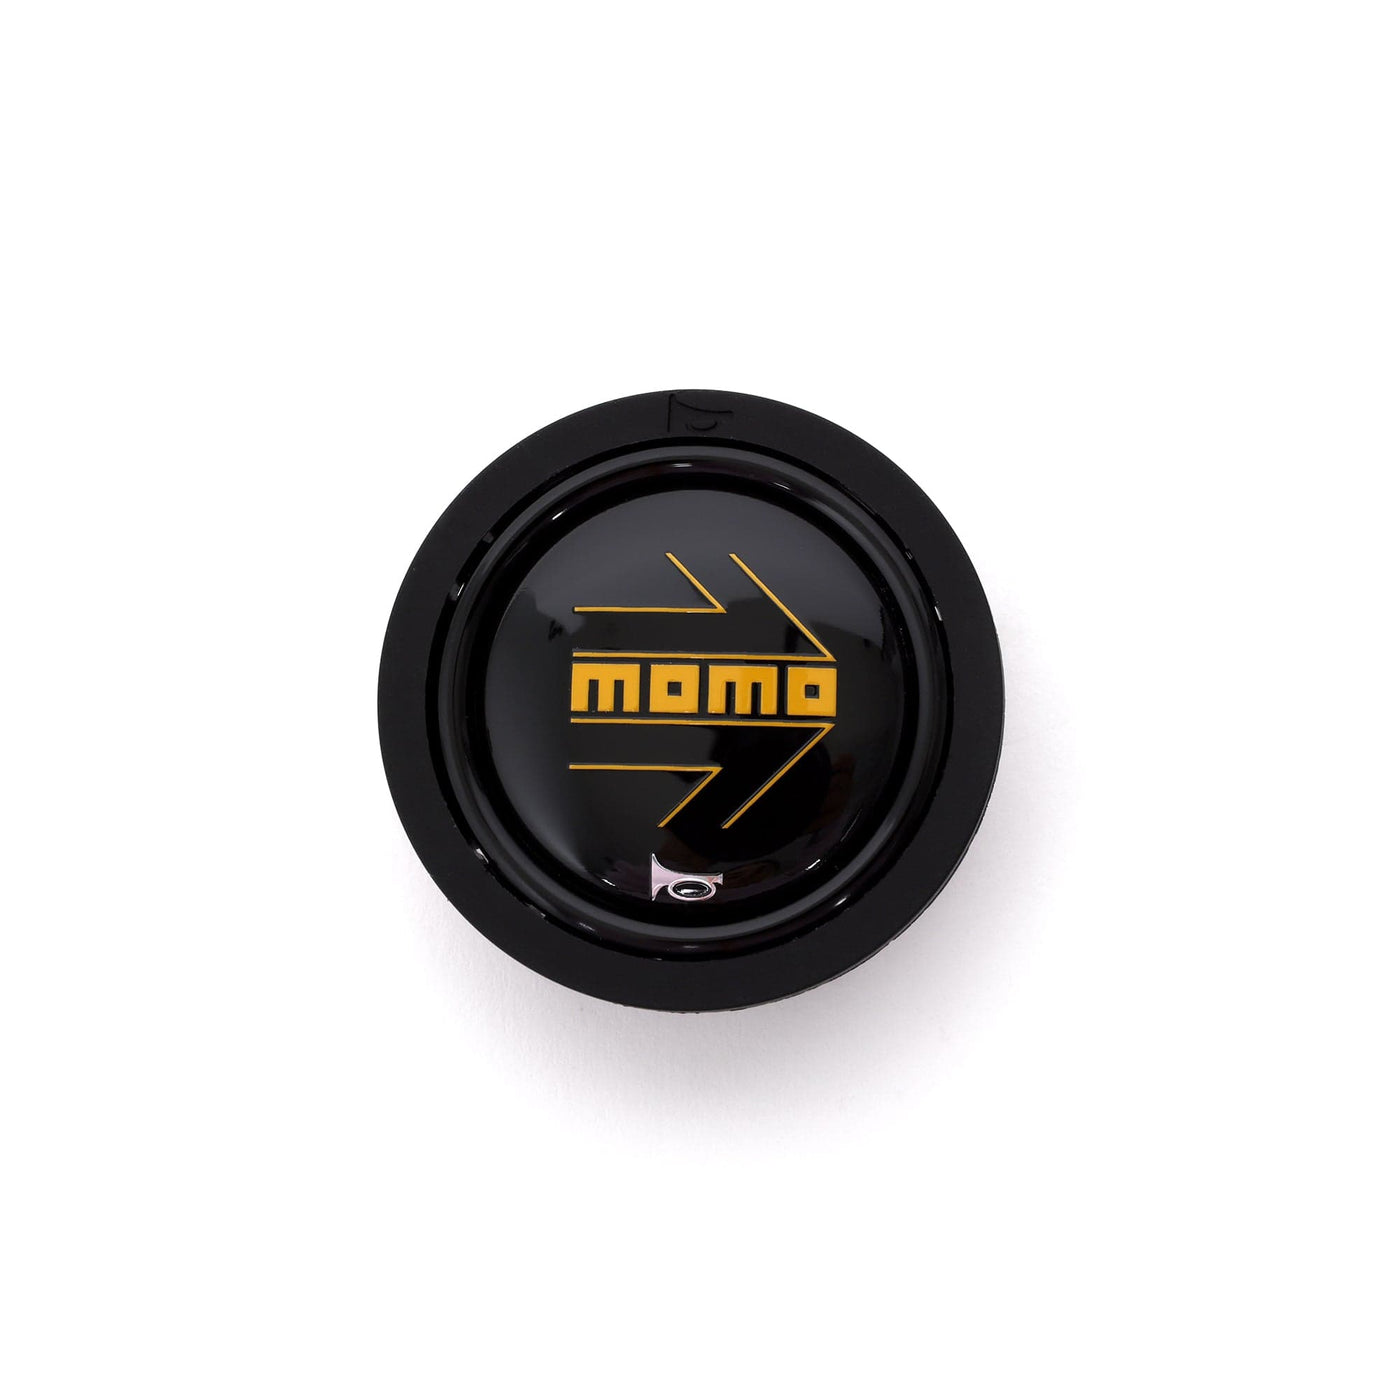 Momo Motorsports Steering Wheels Momo MOD78 Leather Steering Wheel 320 mm - Black/Black Spokes